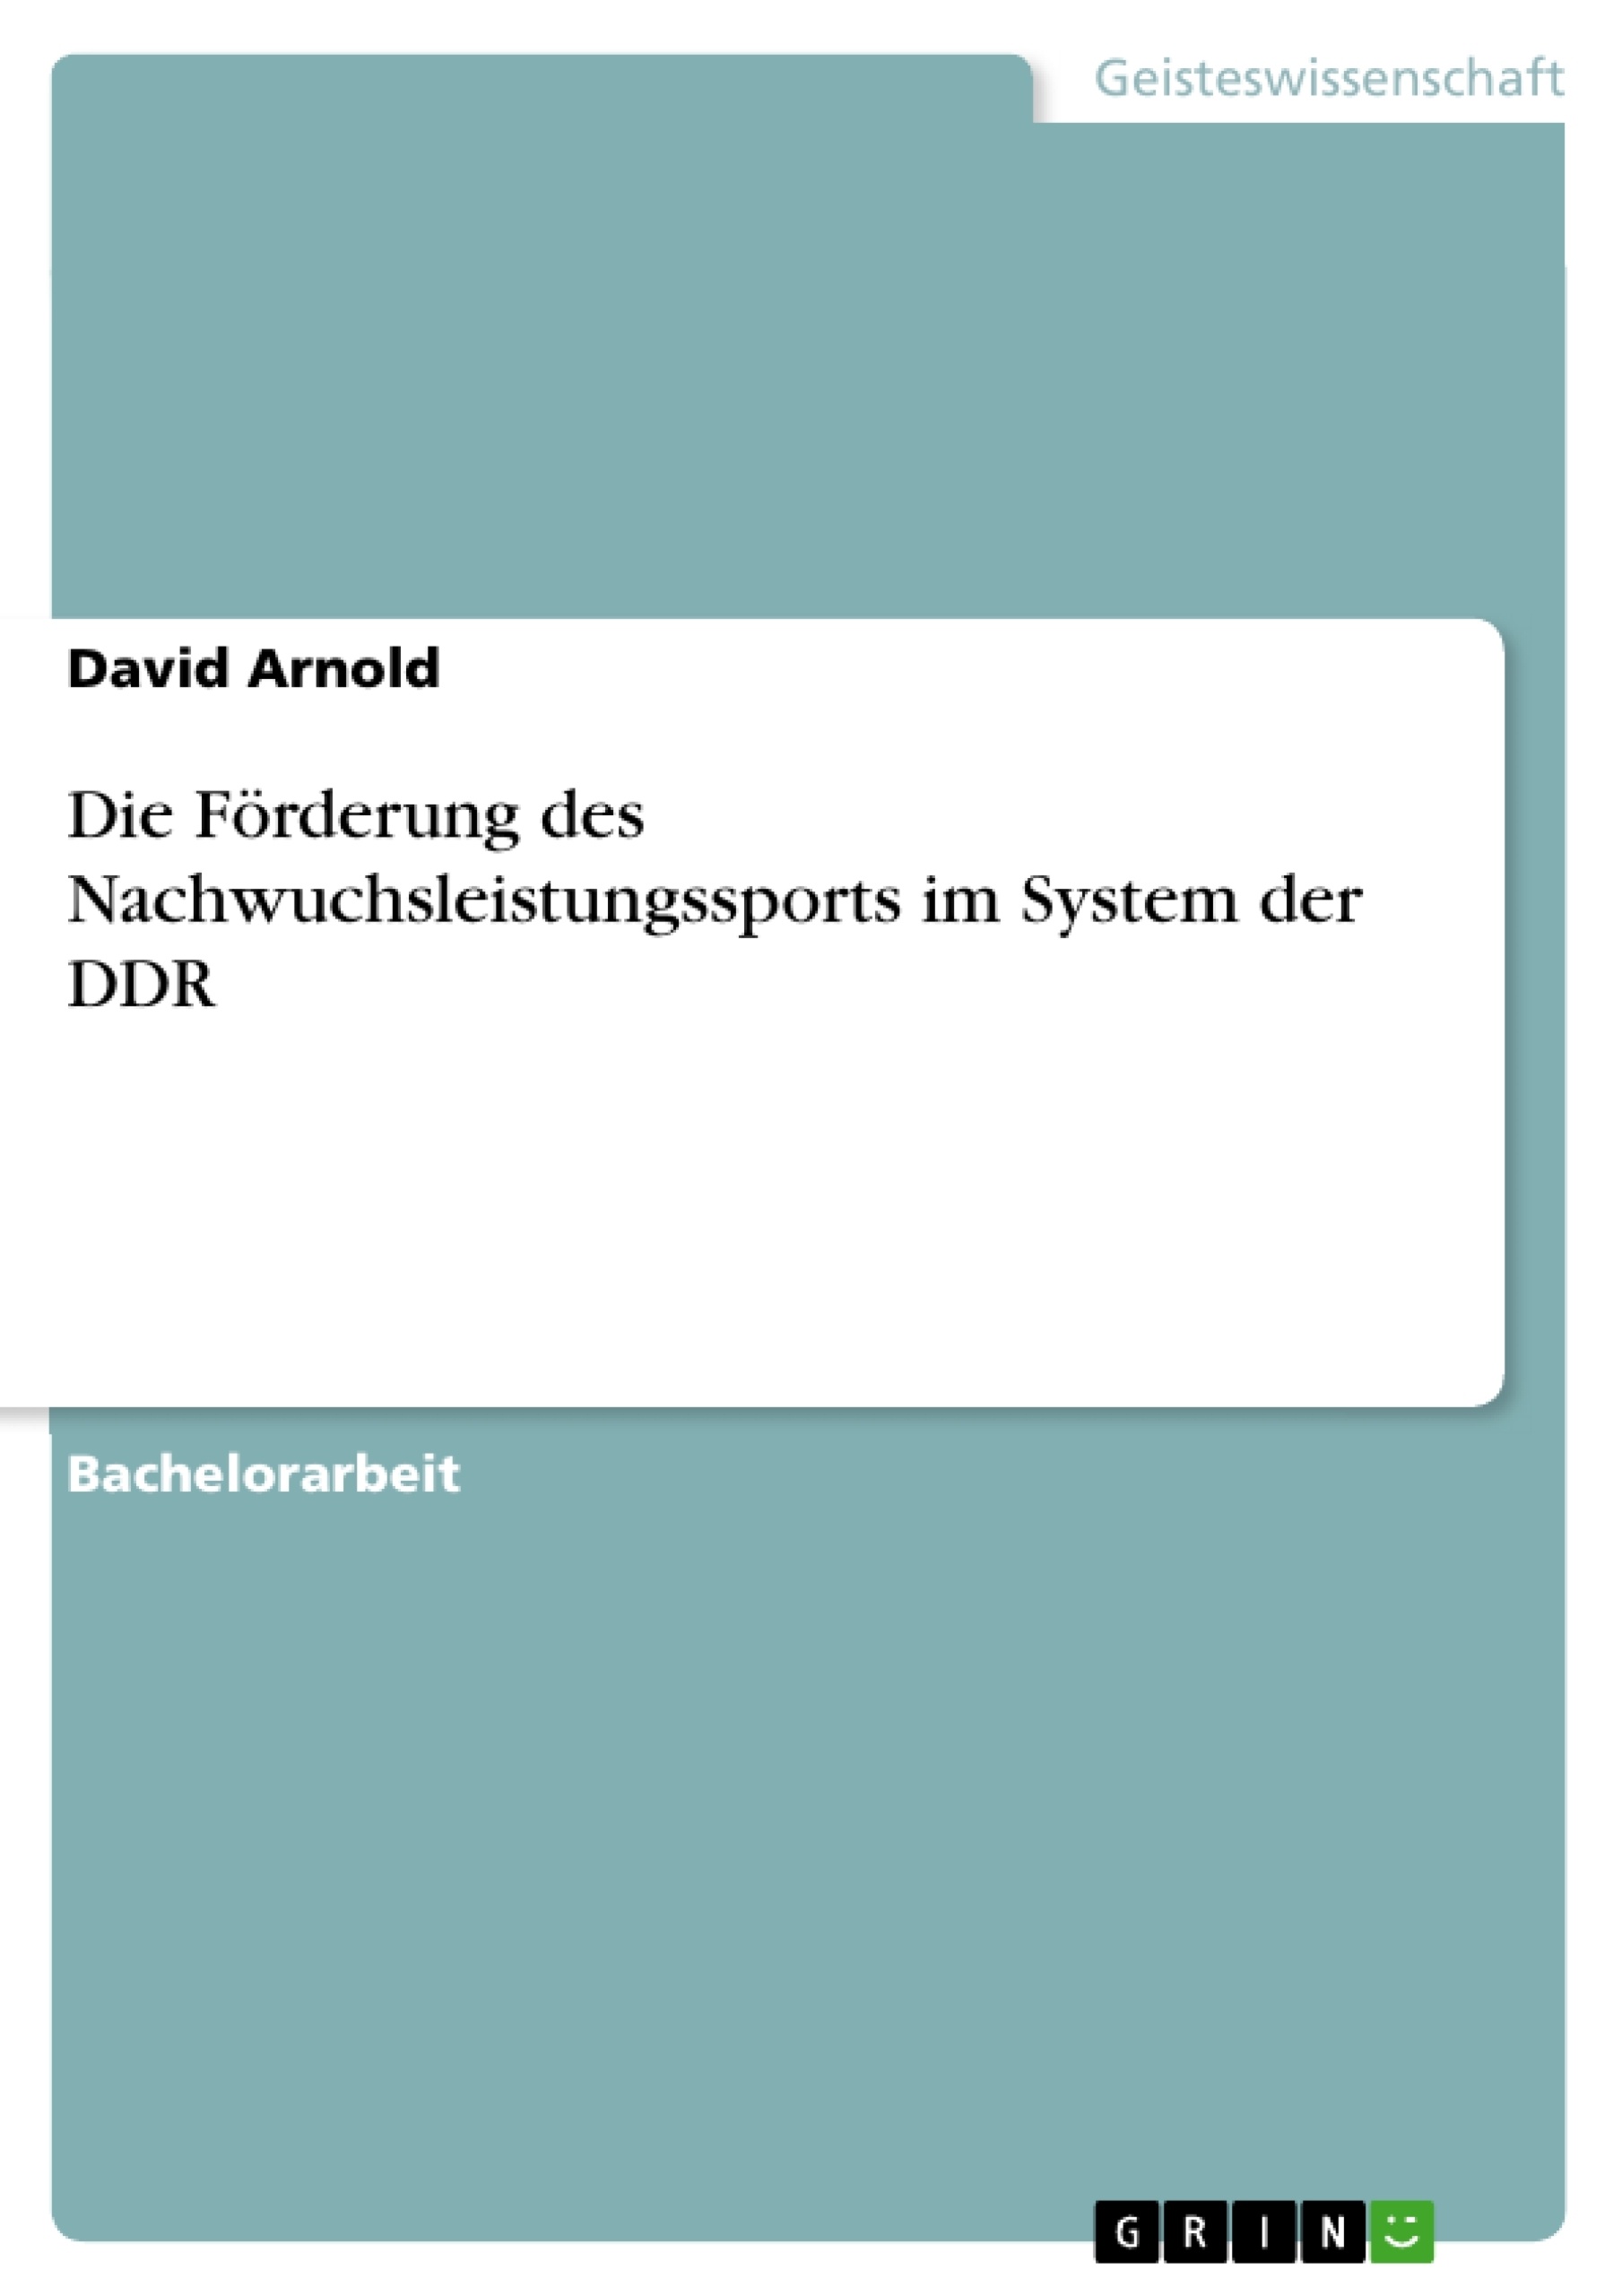 Title: Die Förderung des Nachwuchsleistungssports im System der DDR